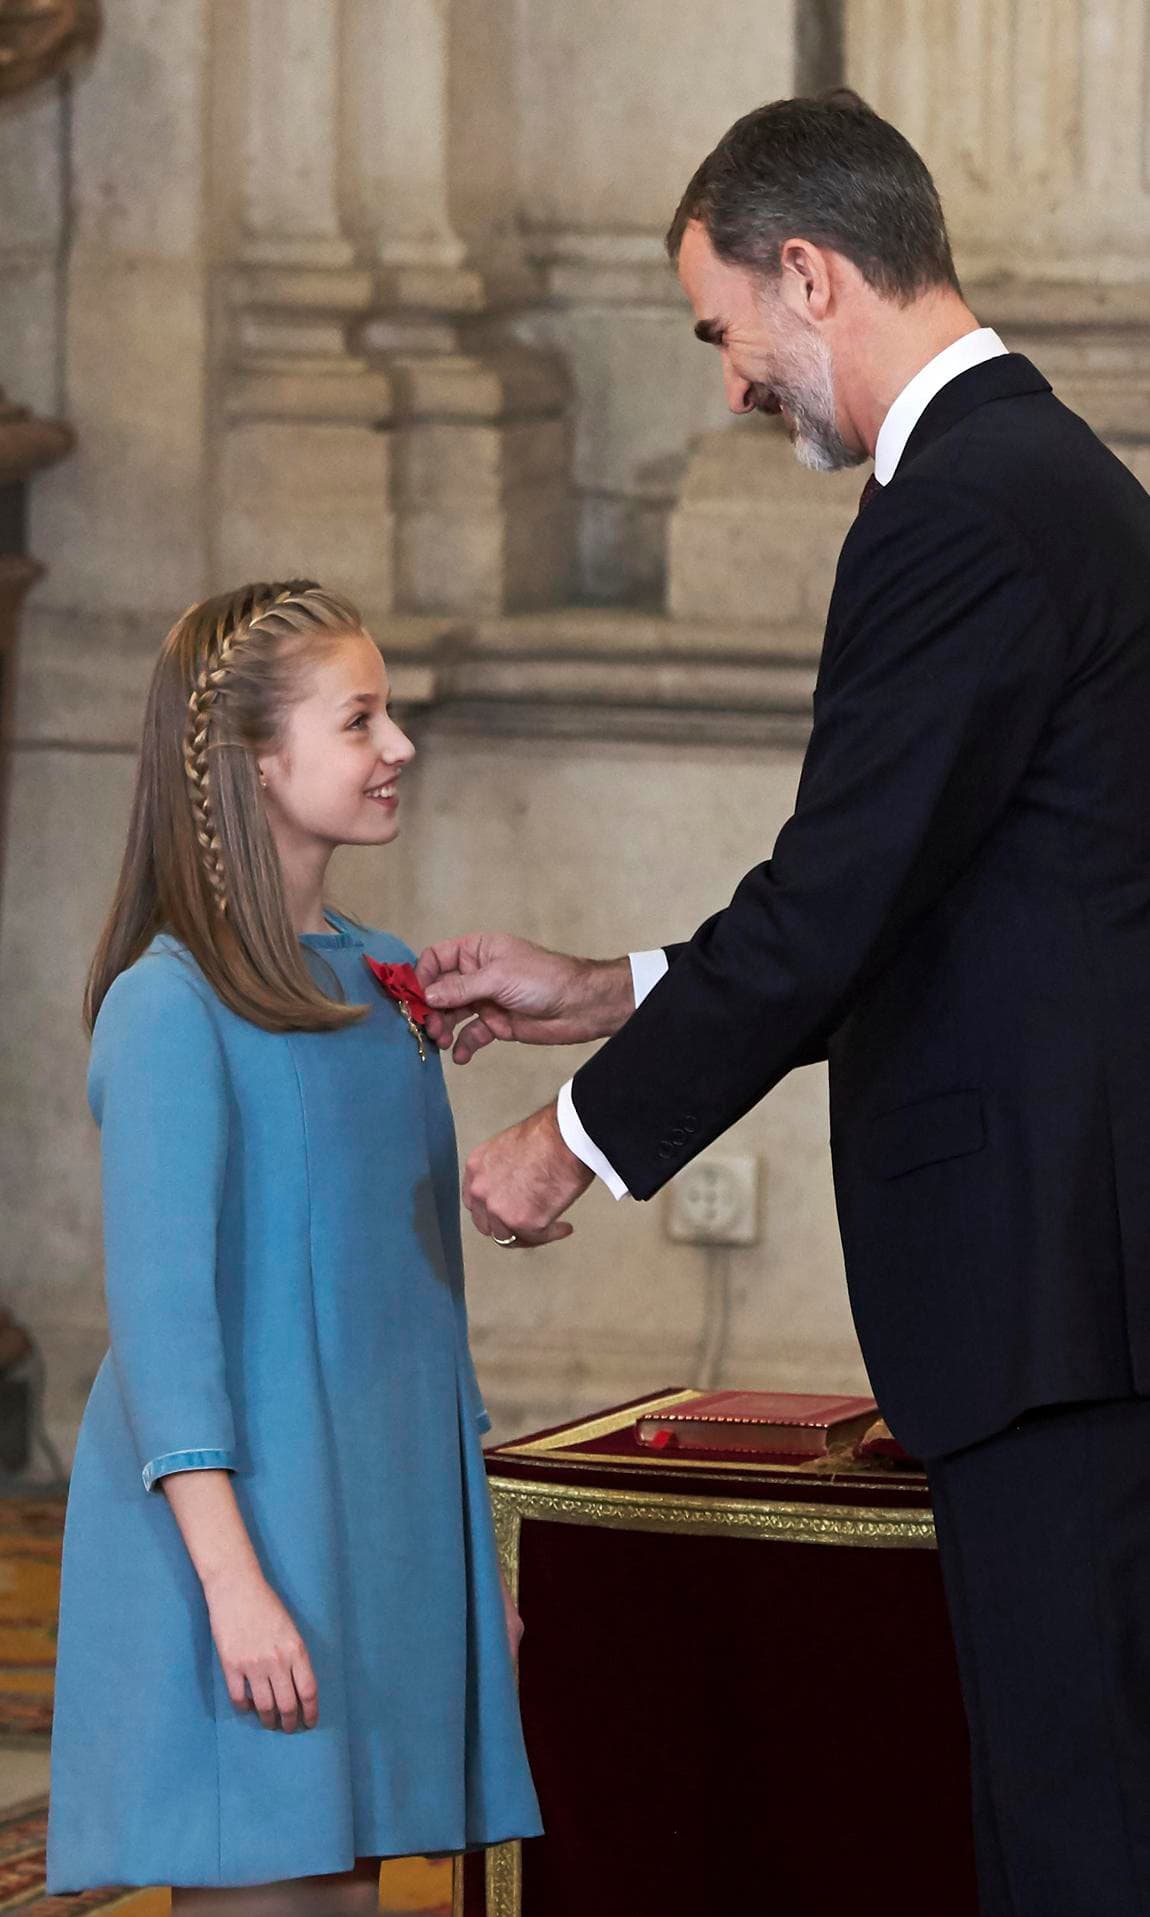 Nàng công chúa được mệnh danh đẹp nhất châu Âu, 17 tuổi đã thể hiện khí chất của nữ hoàng tương lai - Ảnh 4.